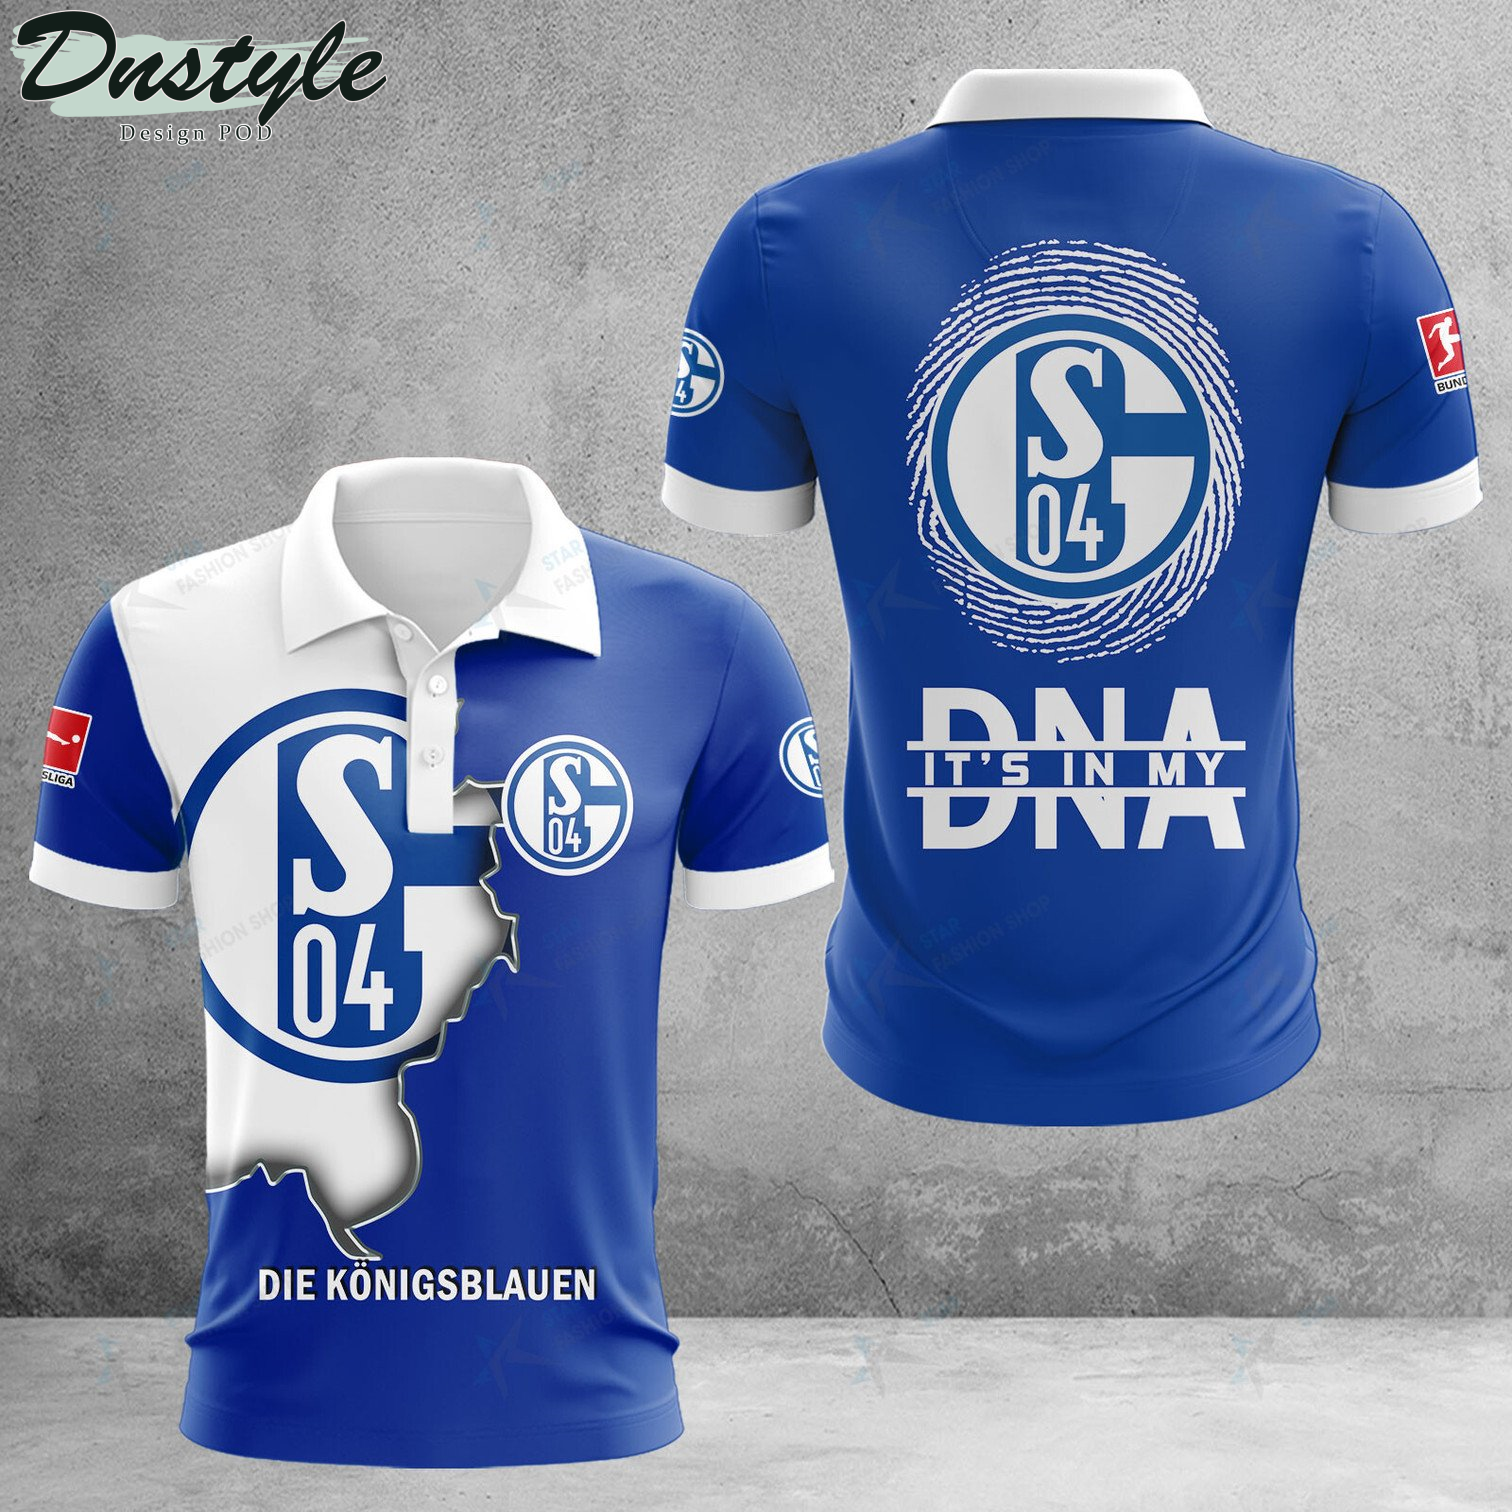 Schalke 04 it's in my DNA polo shirt